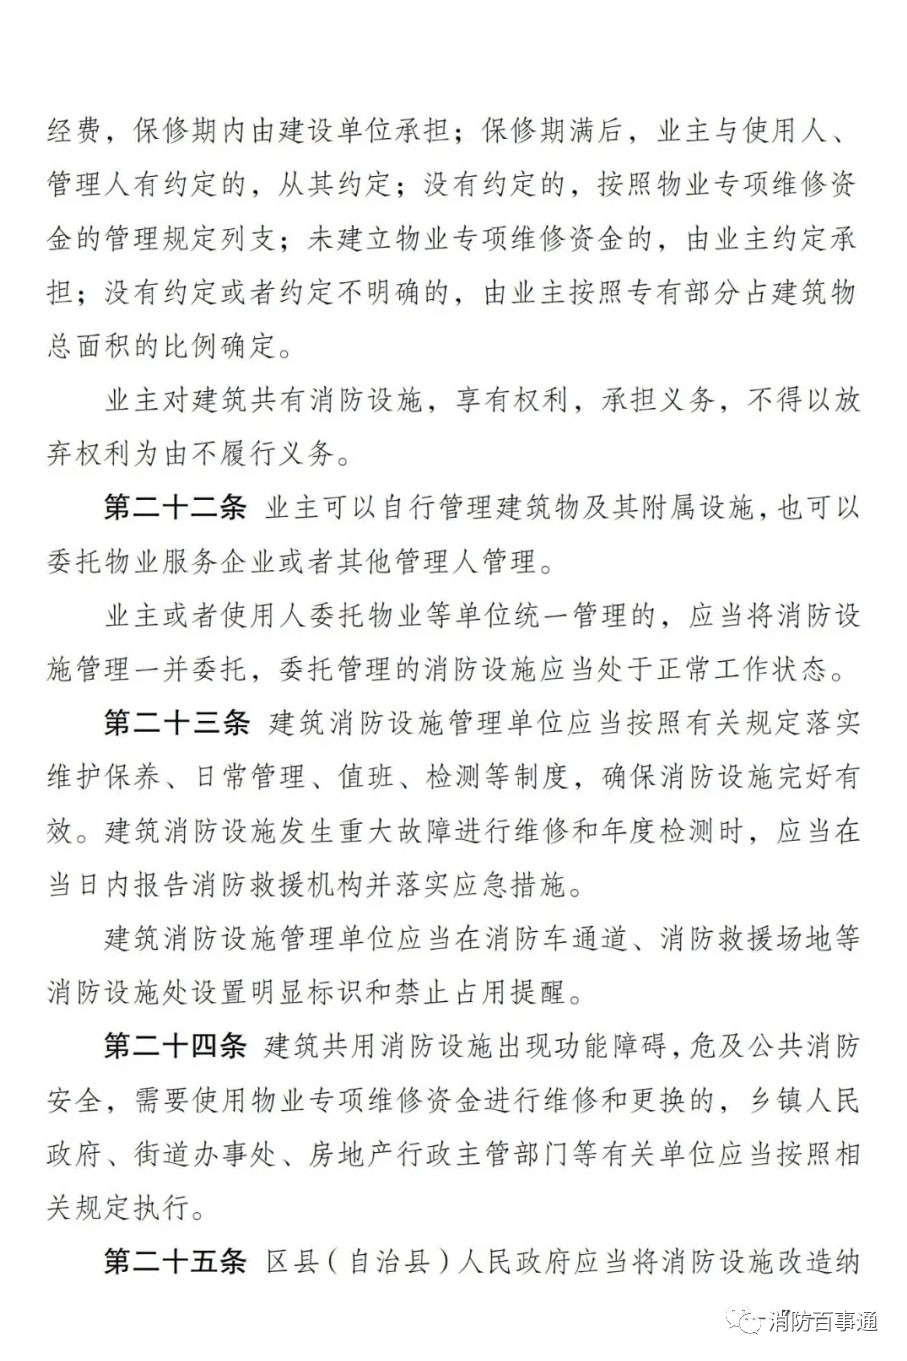 重庆市消防救援总队关于公开征求《重庆市消防设施管理规定（修订草案征求意见稿）》意见的通告